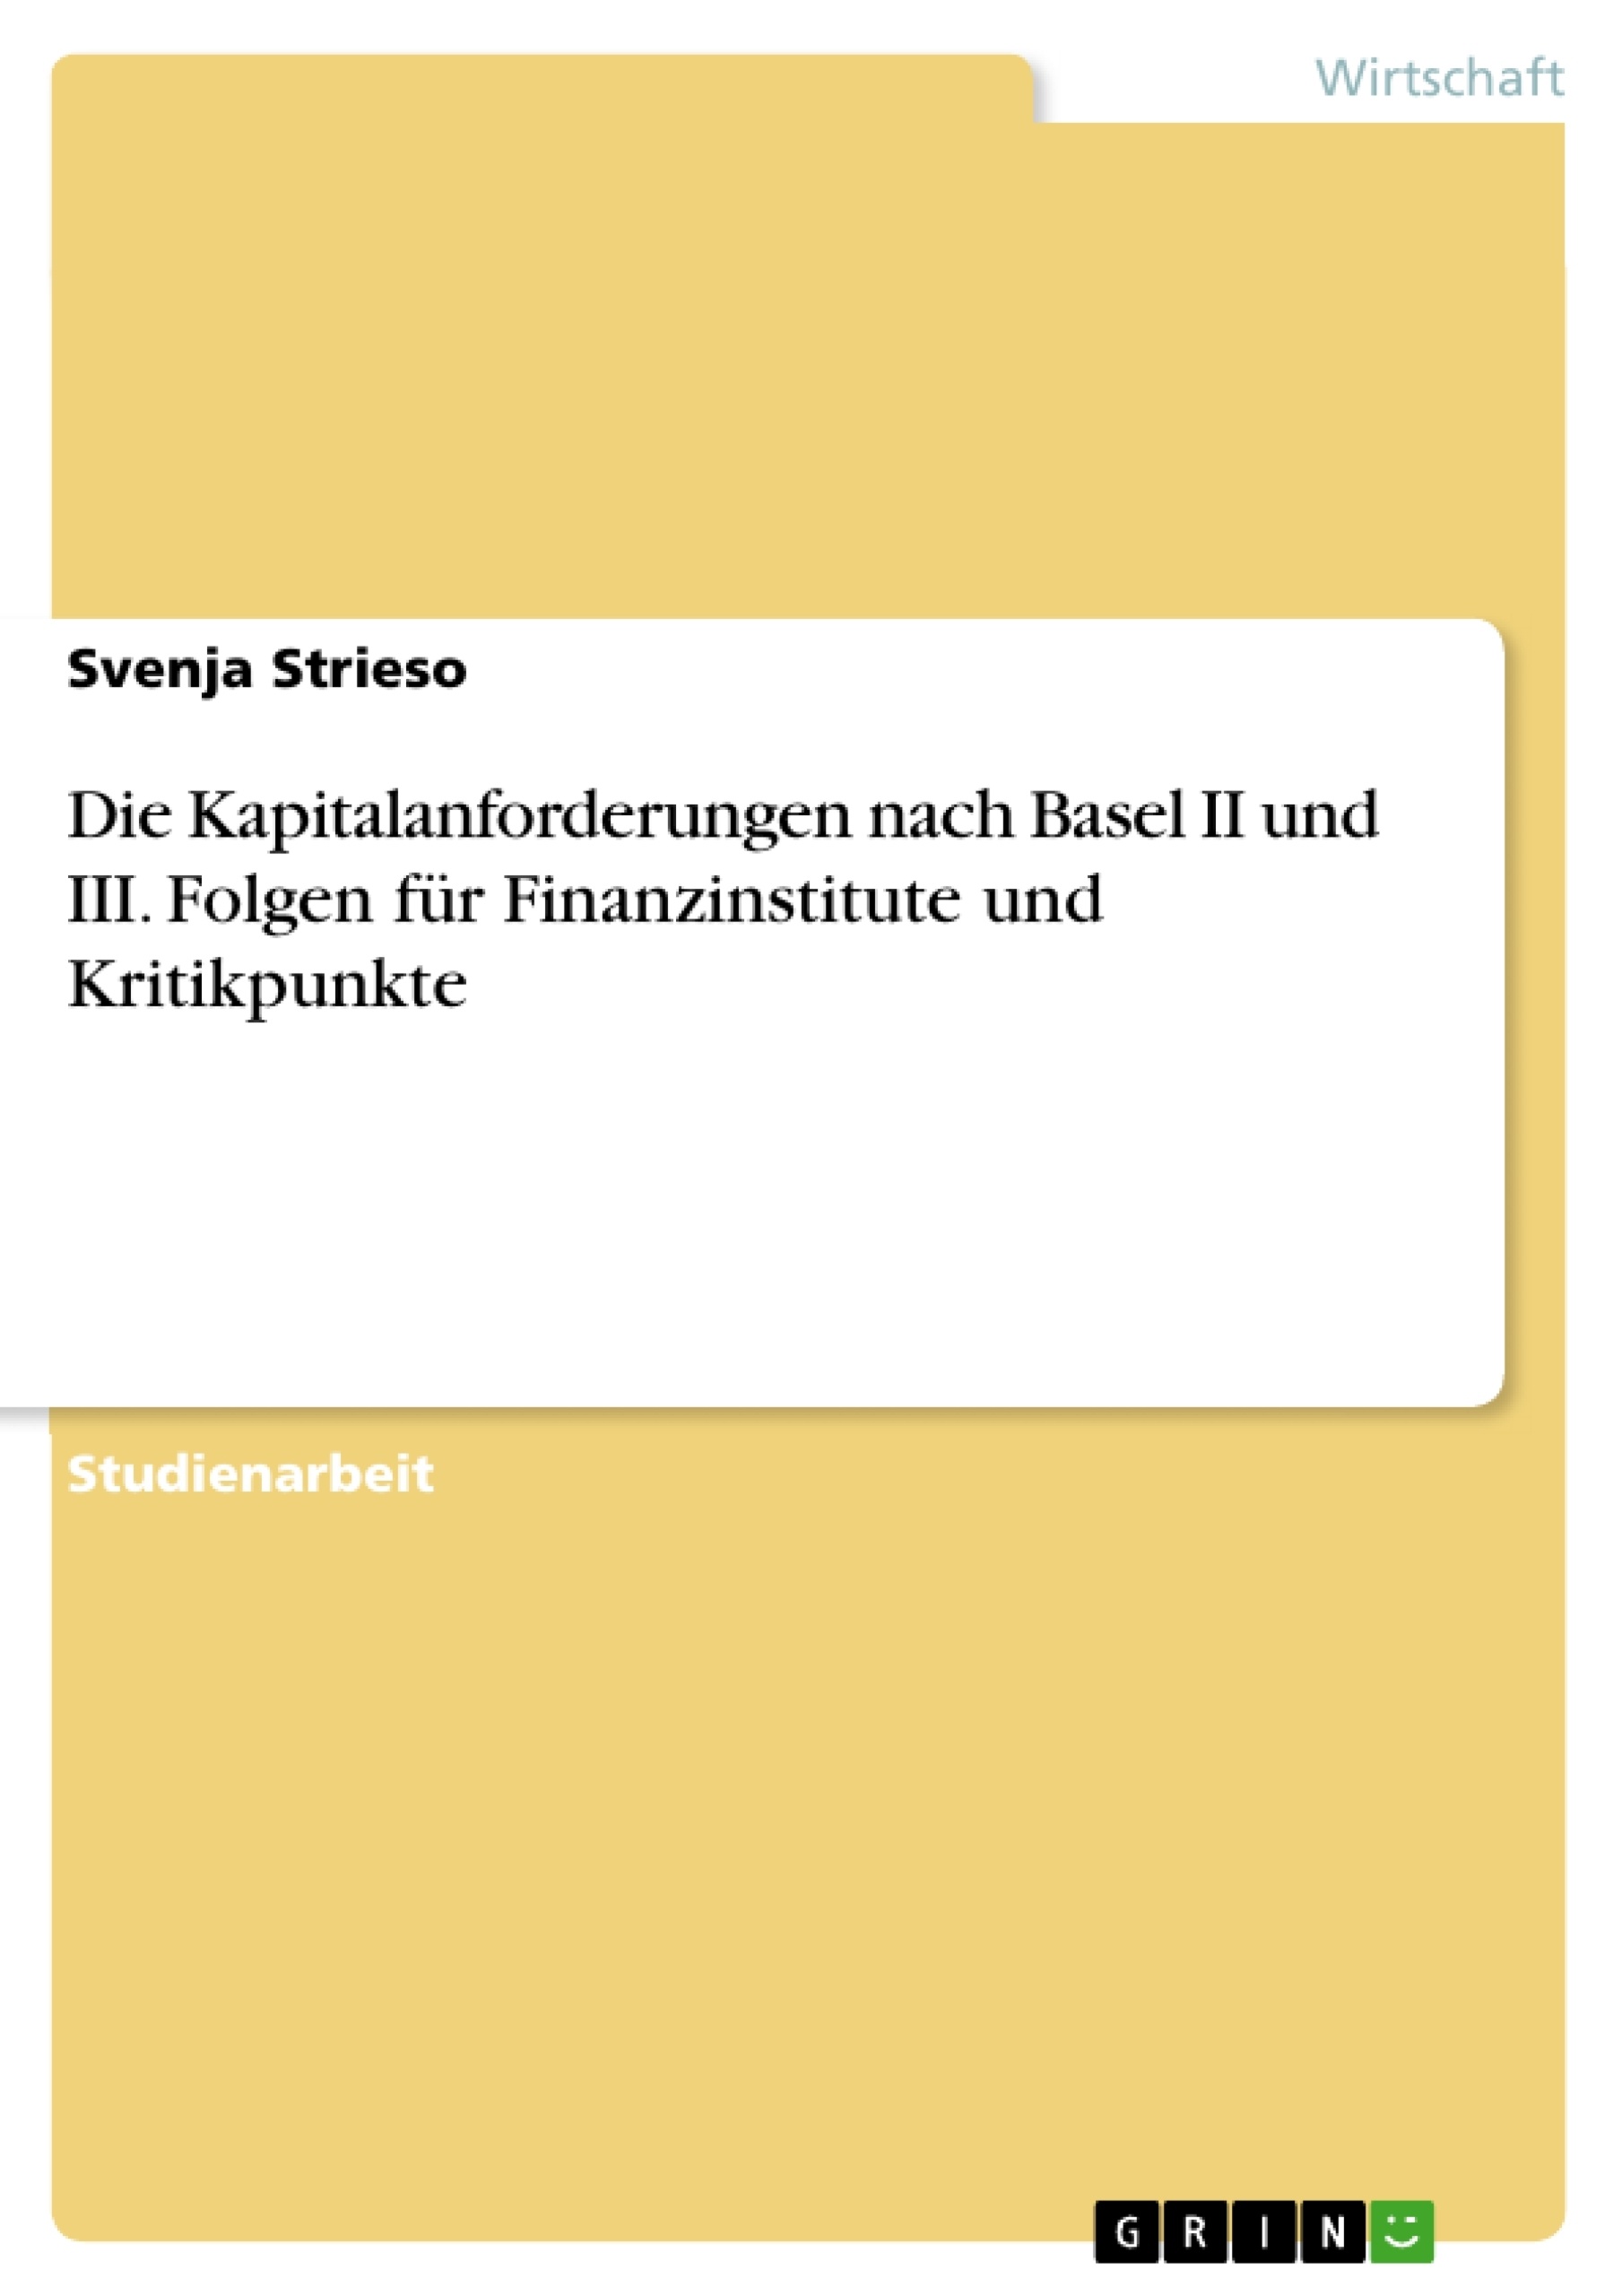 Título: Die Kapitalanforderungen nach Basel II und III. Folgen für Finanzinstitute und Kritikpunkte